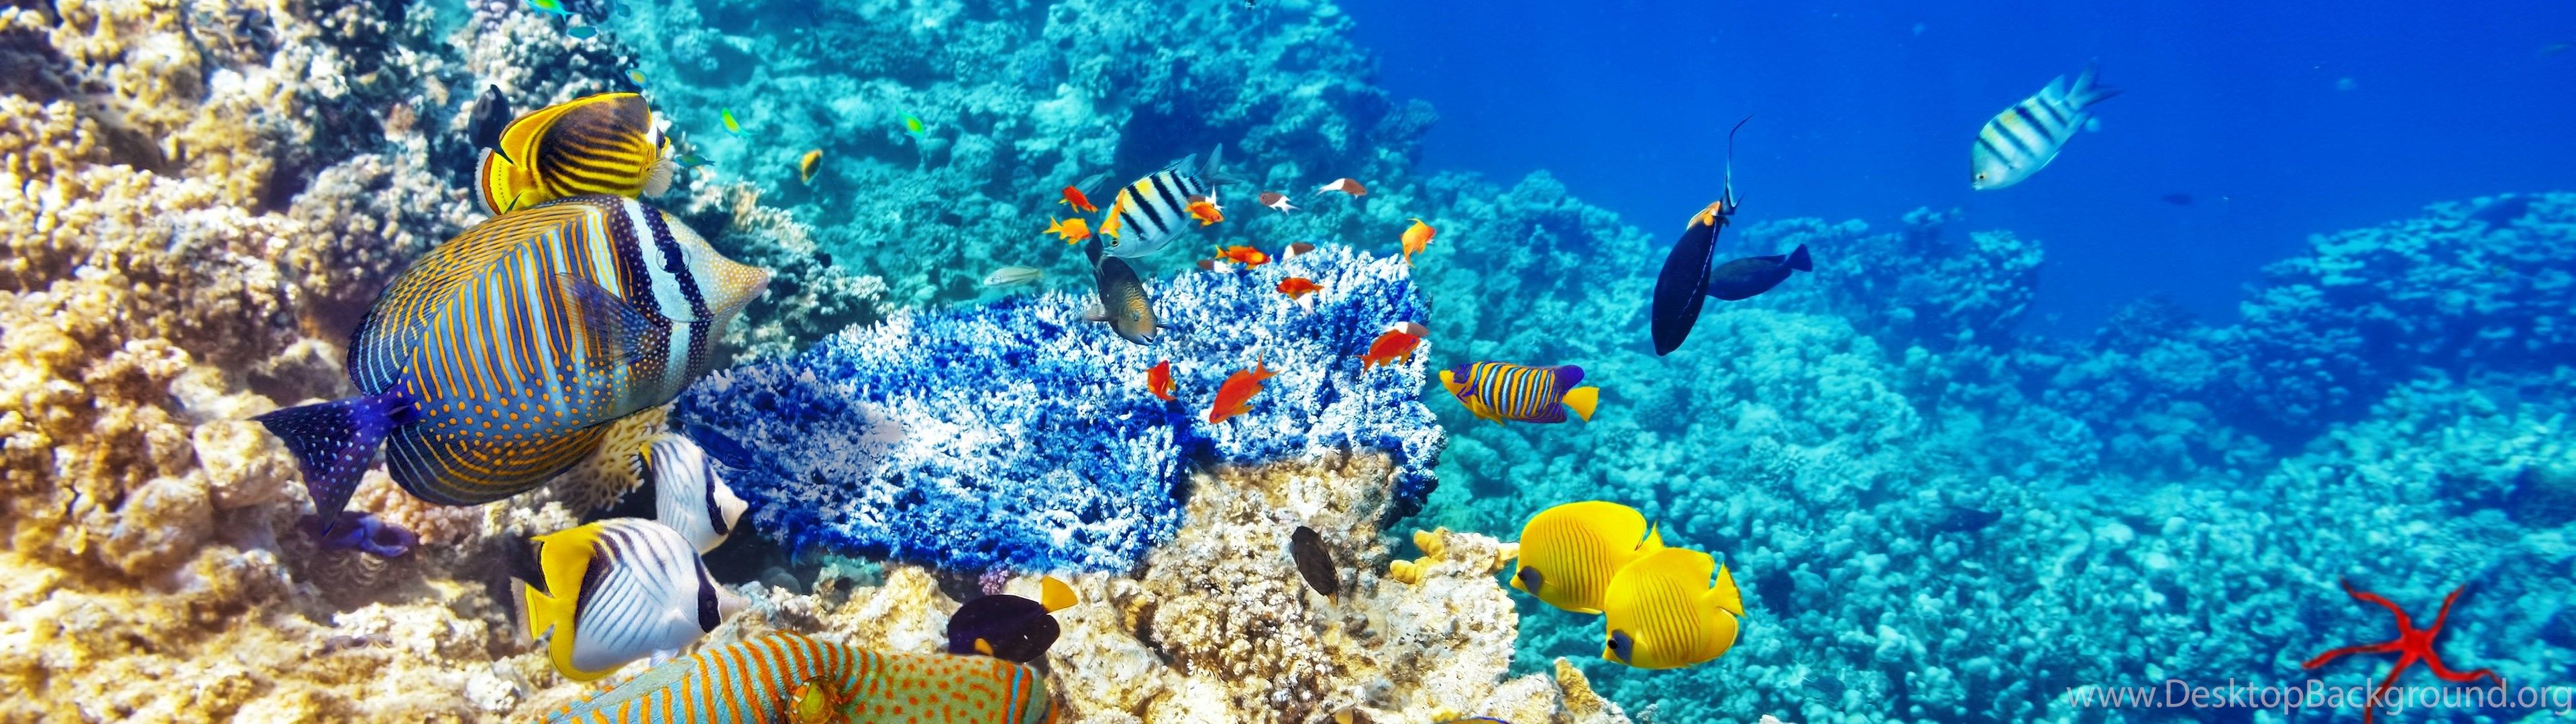 Underwater World Ocean Fish Coral Reef Wallpapers Desktop - Coral Reef Wallpaper Hd - HD Wallpaper 